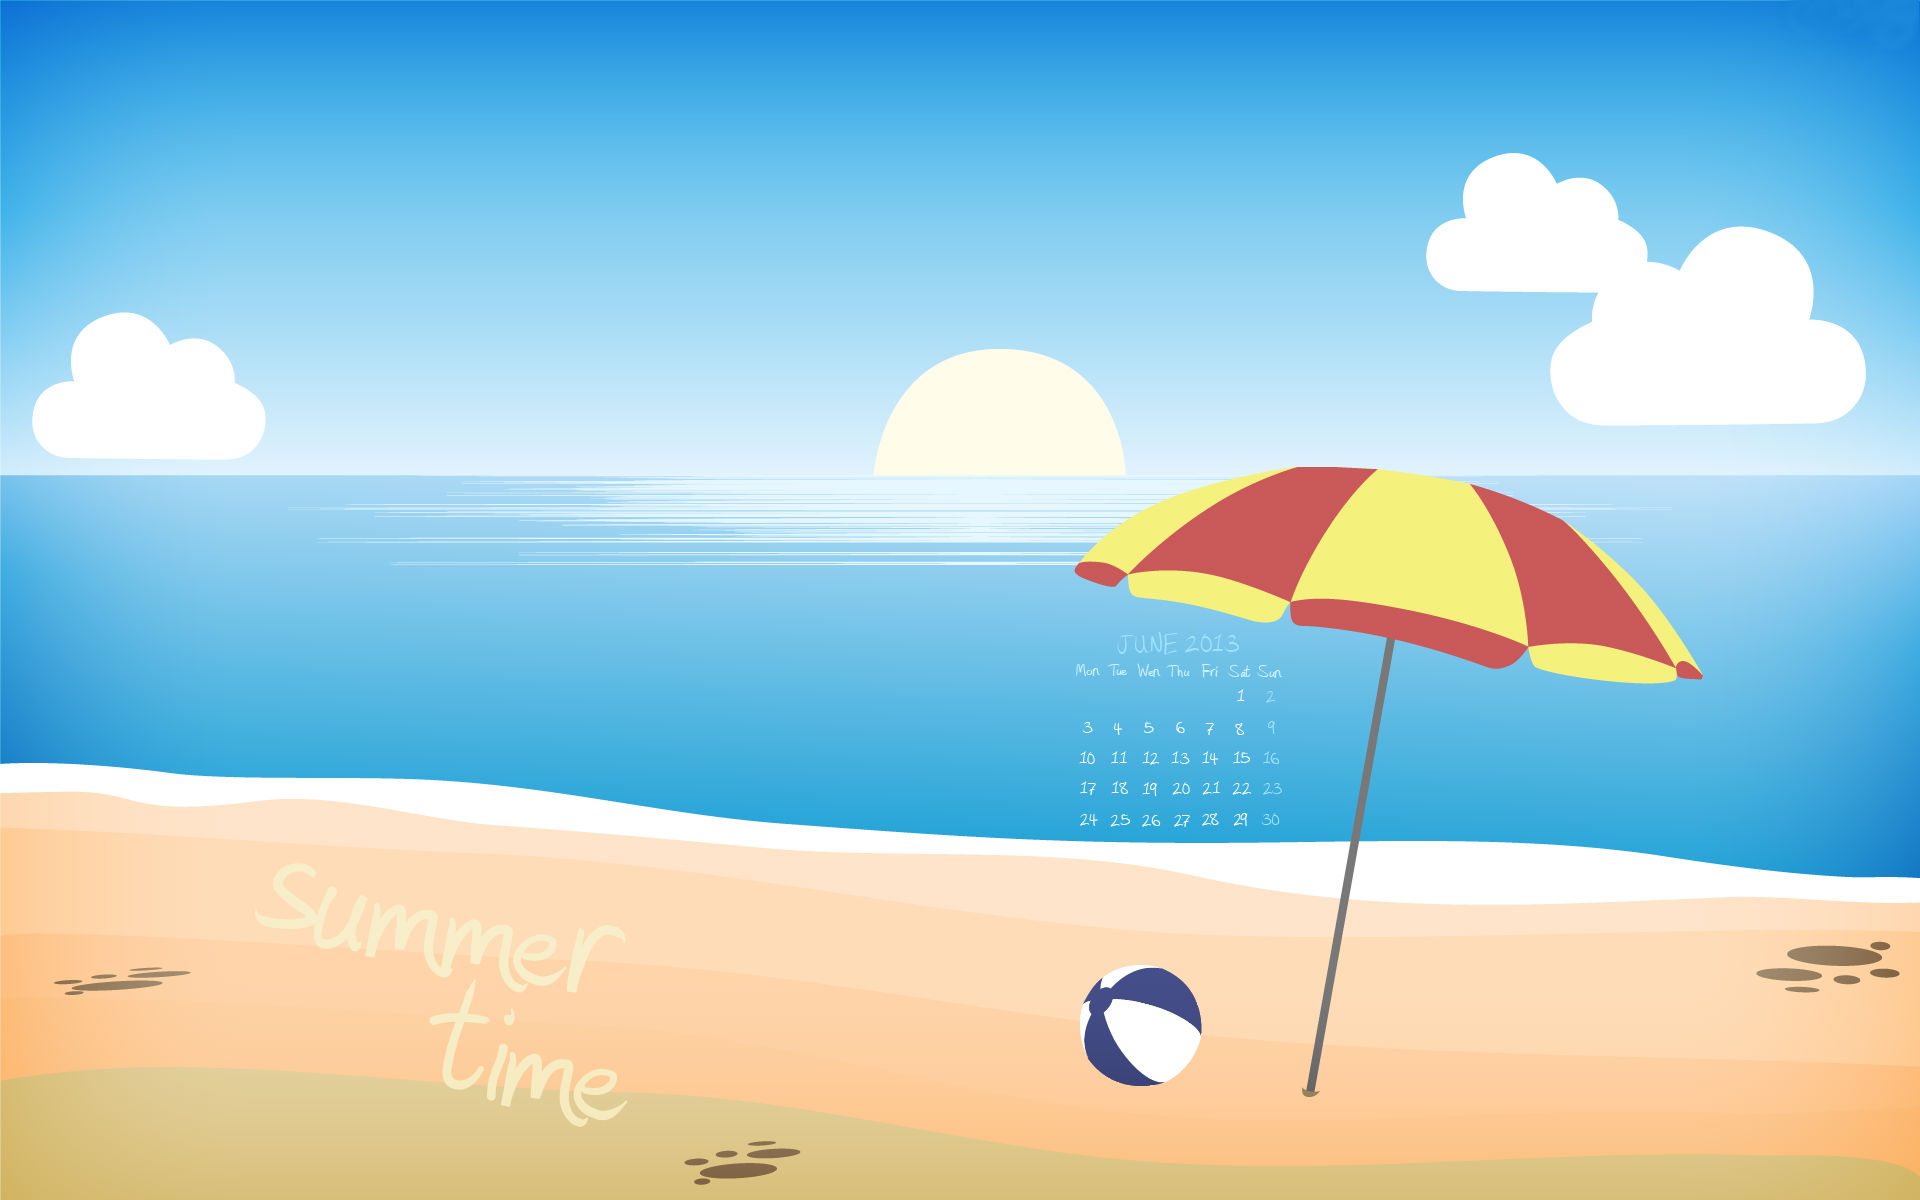 Summer Time June 2013 - June Summer , HD Wallpaper & Backgrounds